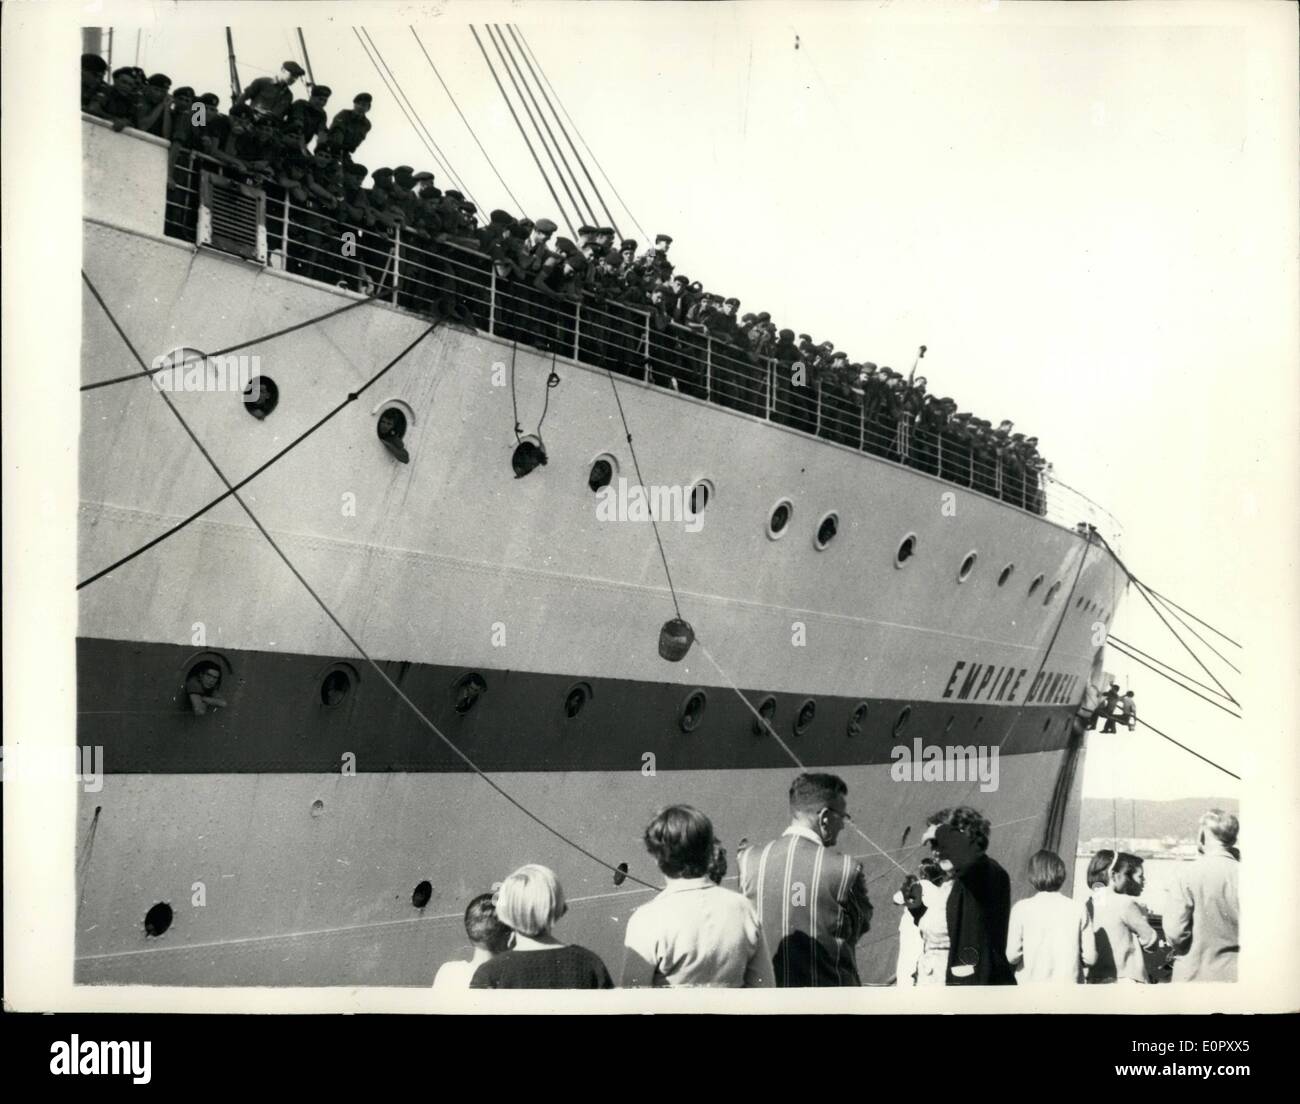 Jun. 06, 1957 Grippe - avec des navires militaires britanniques et des familles à bord est mise en quarantaine à Durban. : 18 036 tonnes l'Empire britannique, à bord d'Orwell qui est sur son chemin à la Grande-Bretagne avec 2 000 hommes et 250 femmes et enfants, sont arrivés à Durban et a été placé sous quarantaine stricte parce qu'il y a plusieurs cas de grippe asiatique à bord. Photo montre des hommes de l'15/19 Hussars, qui sont sur le chemin du retour après plusieurs années en Malaisie, du navire de ligne et regarder les rails de l'activité sur le quai à Durban Banque D'Images